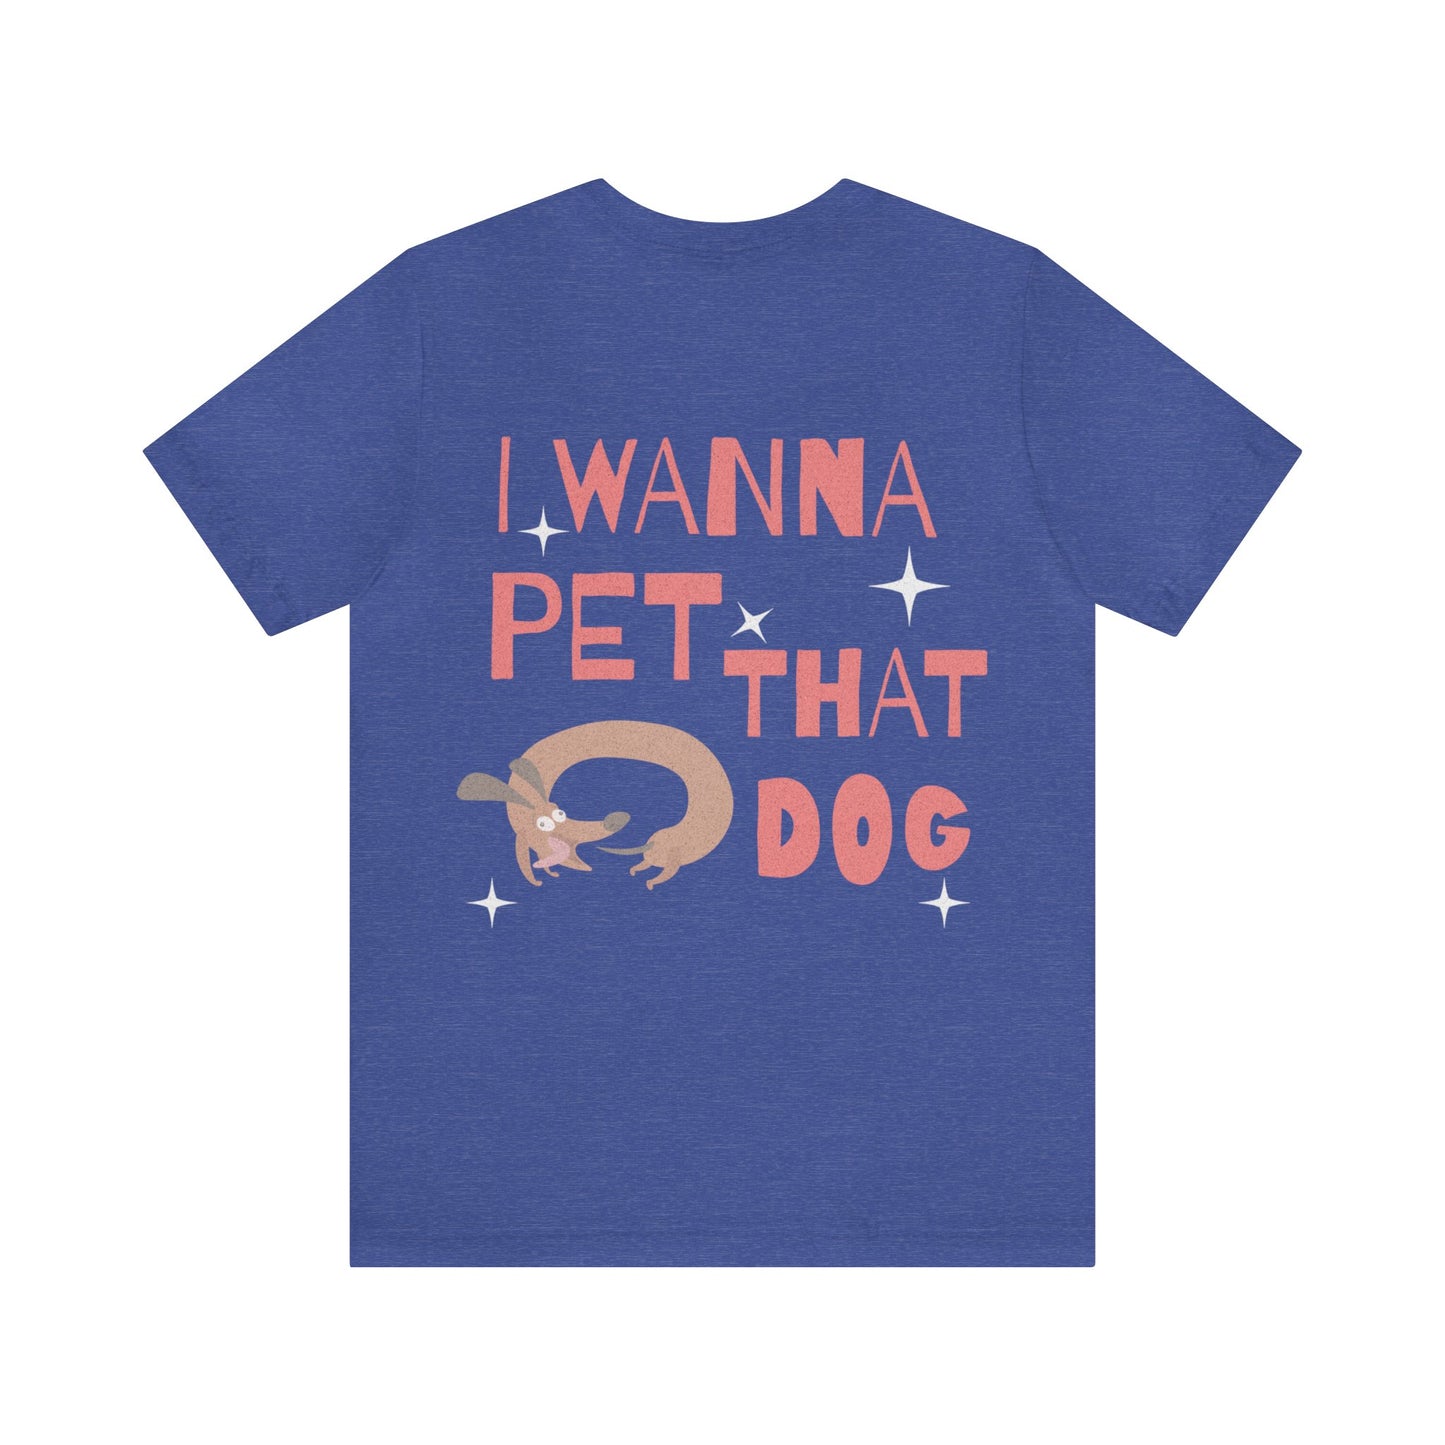 I wanna pet that dog - tshirt - unisex soft tee